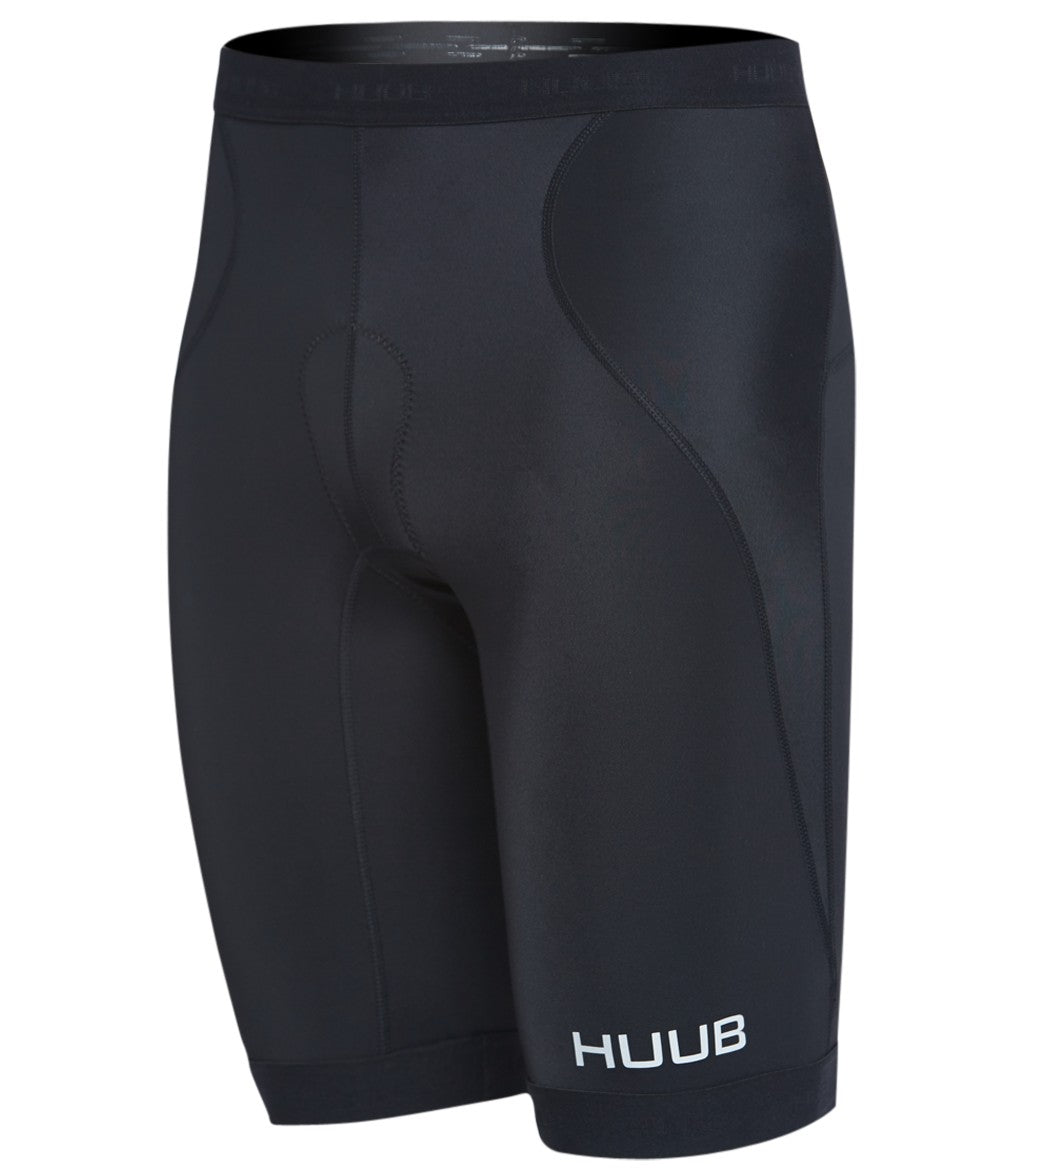 Huub Men's Essentials Tri Shorts - Black/Red Small - Swimoutlet.com